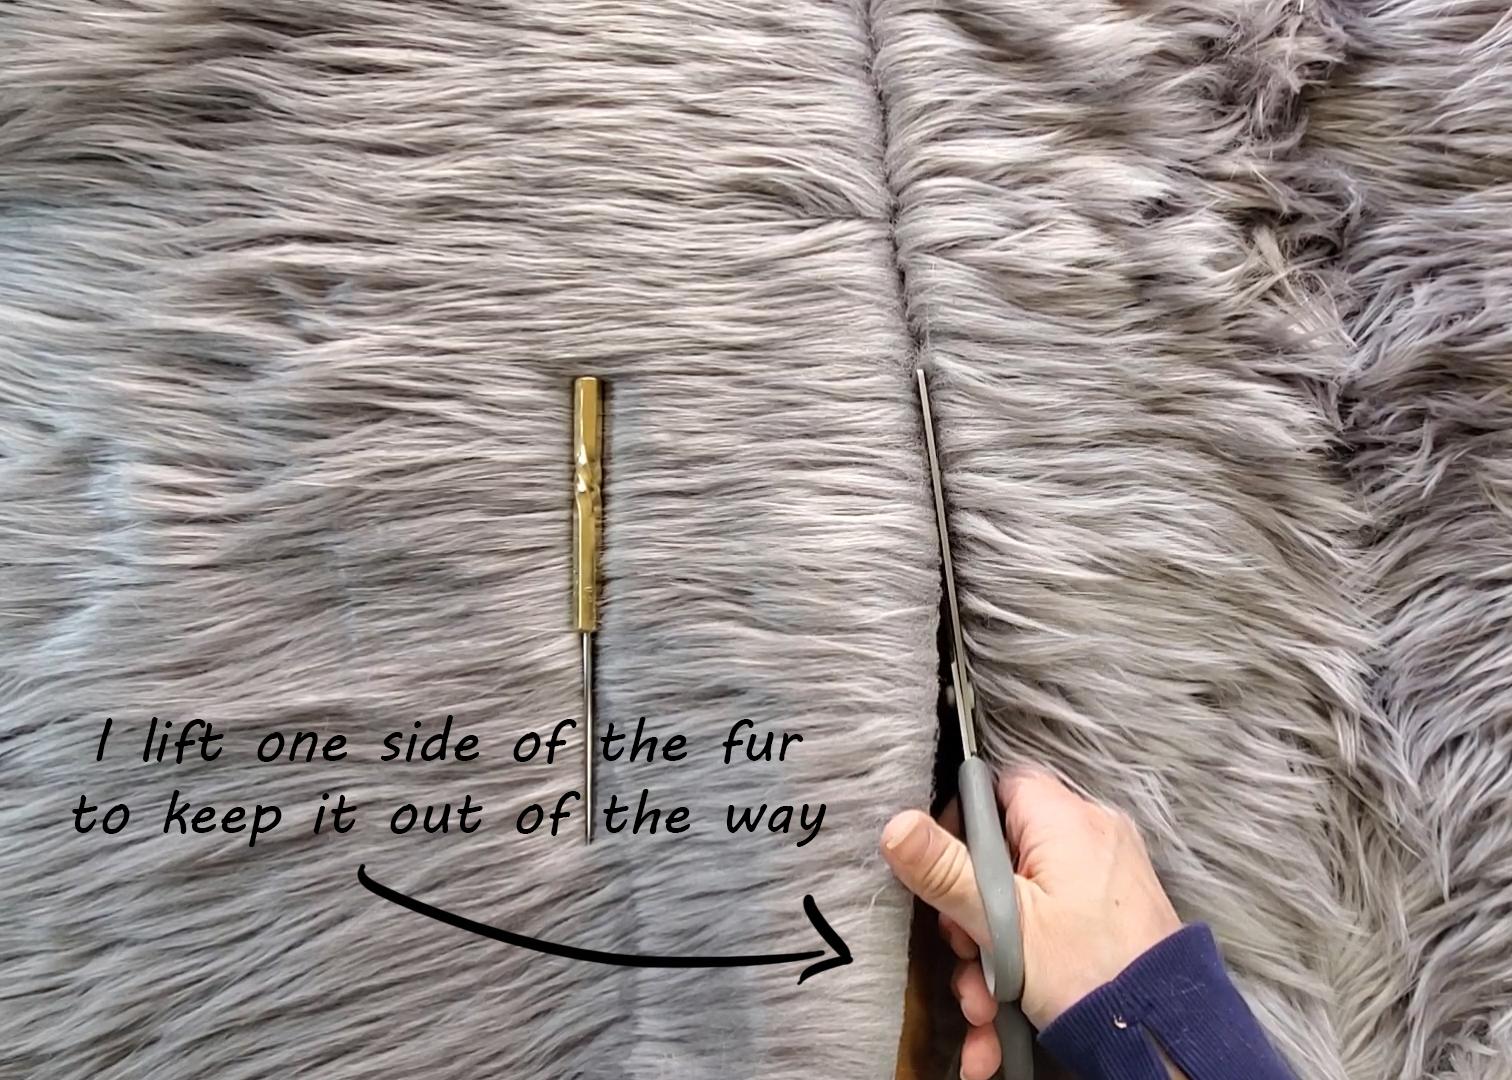 cutting fur.jpg